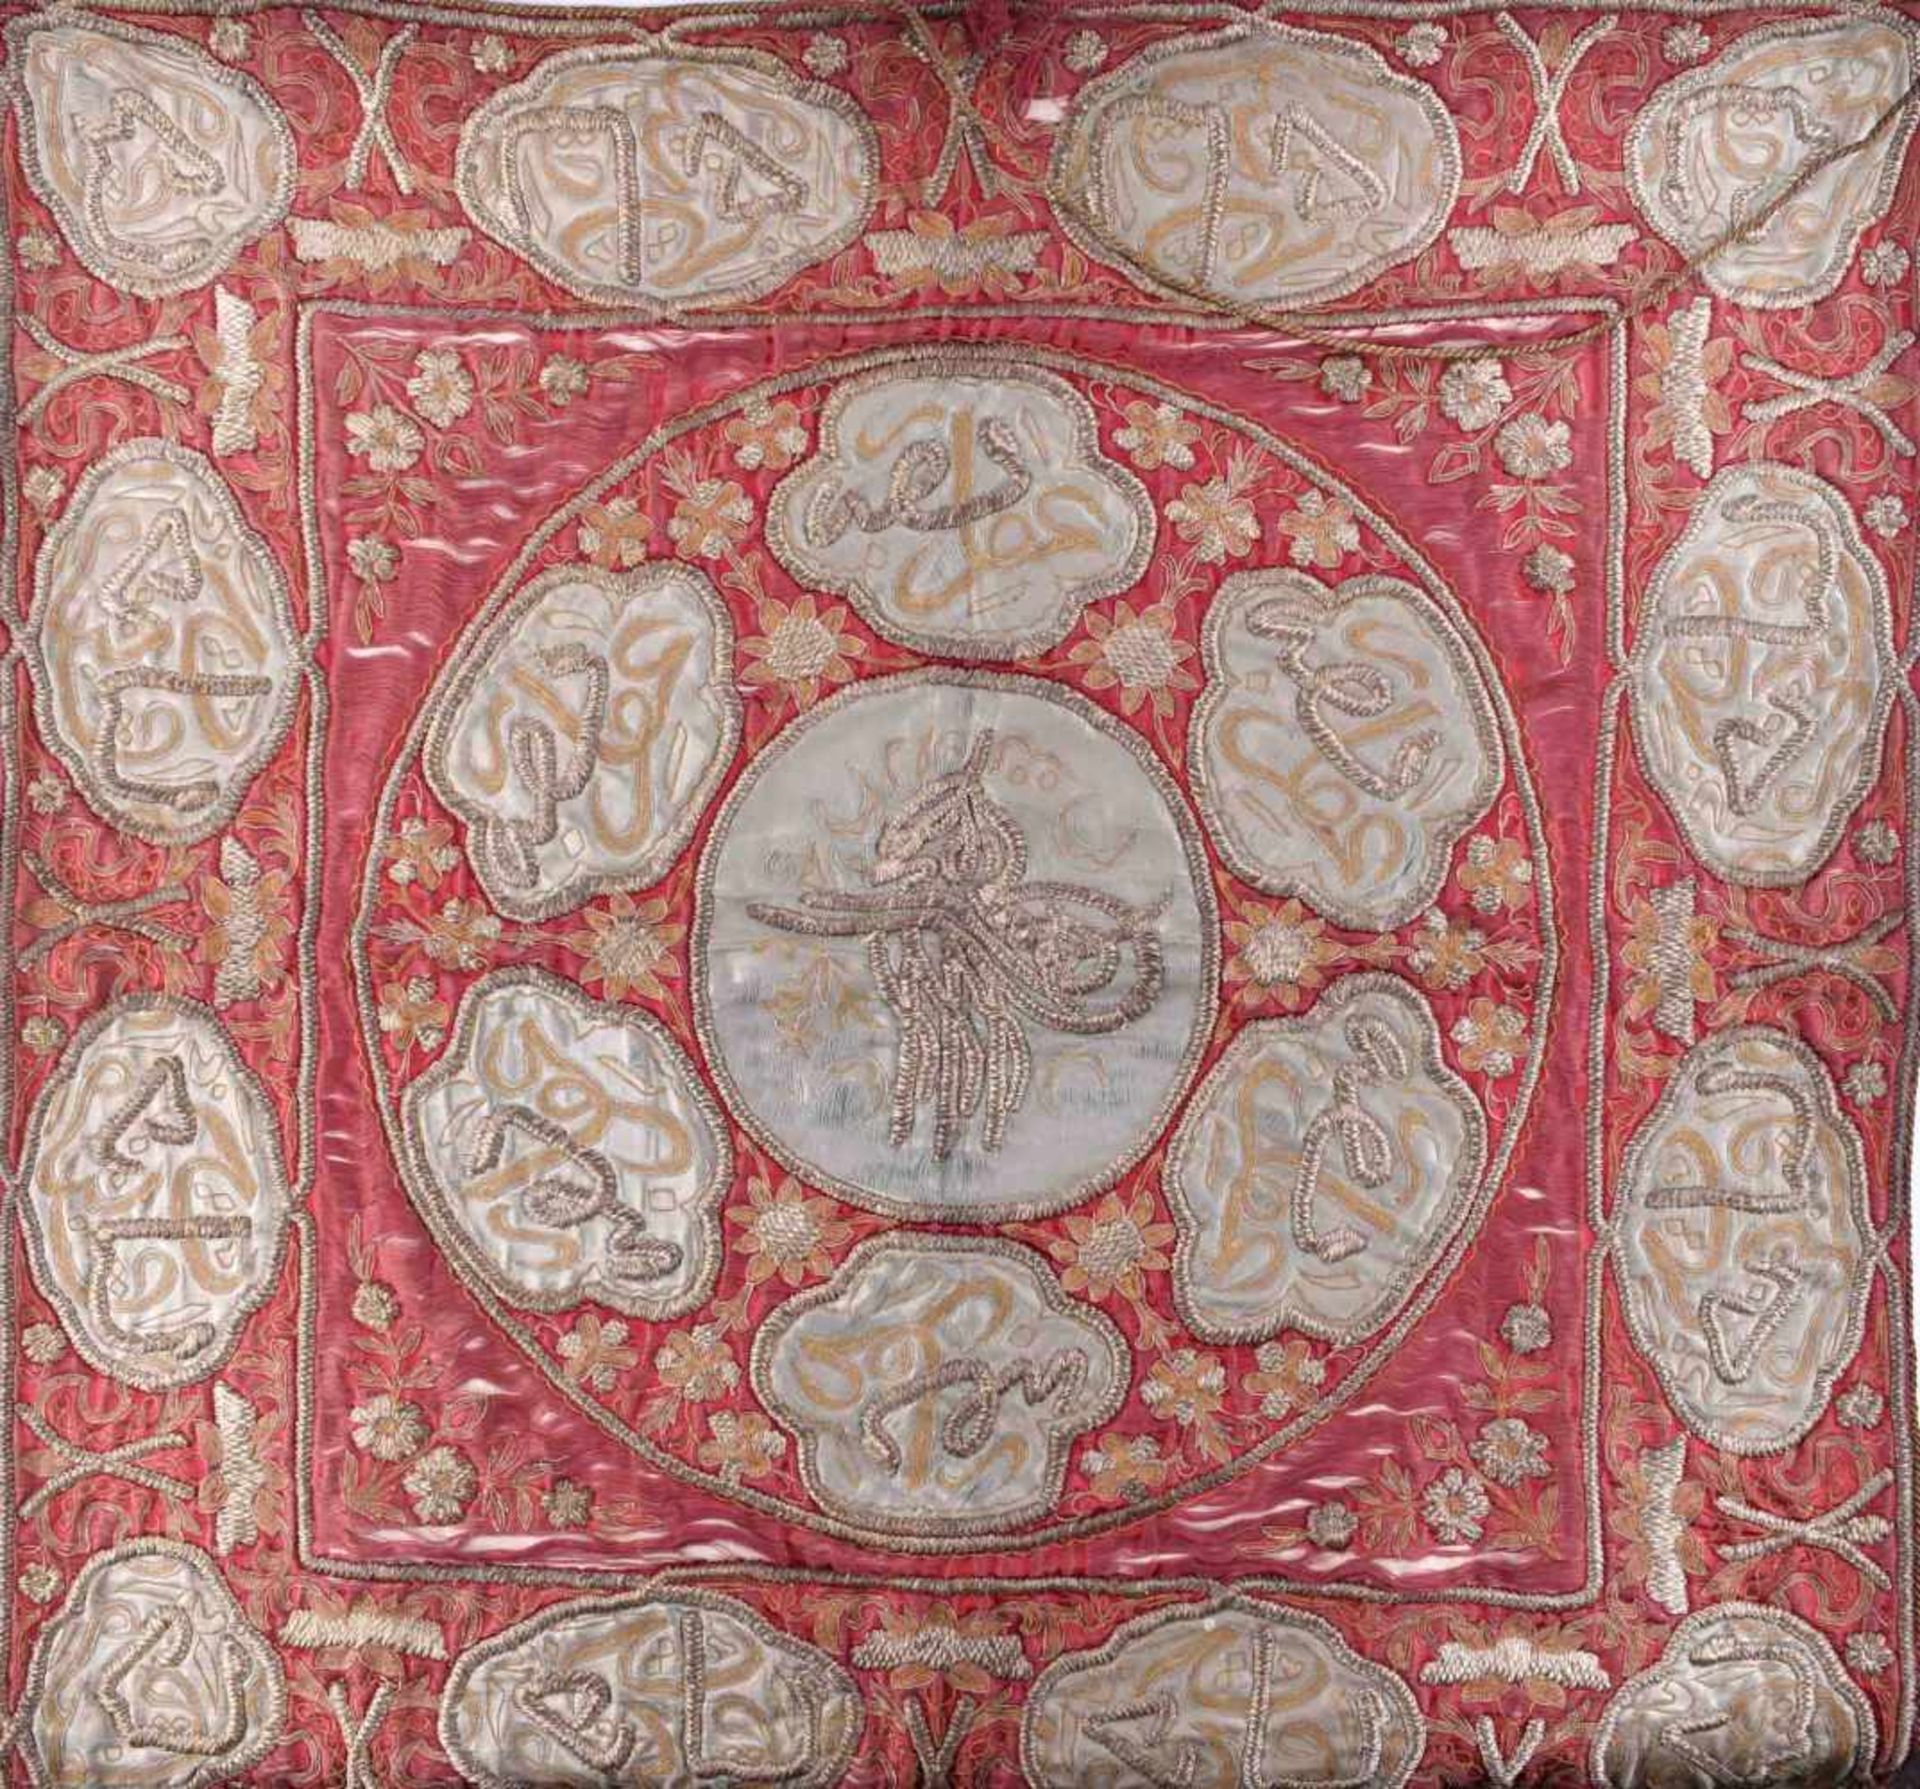 alter Wandbehang, türkisch / osmanischHandarbeit, 83 cm x 83 cmold tapestry, turkish /